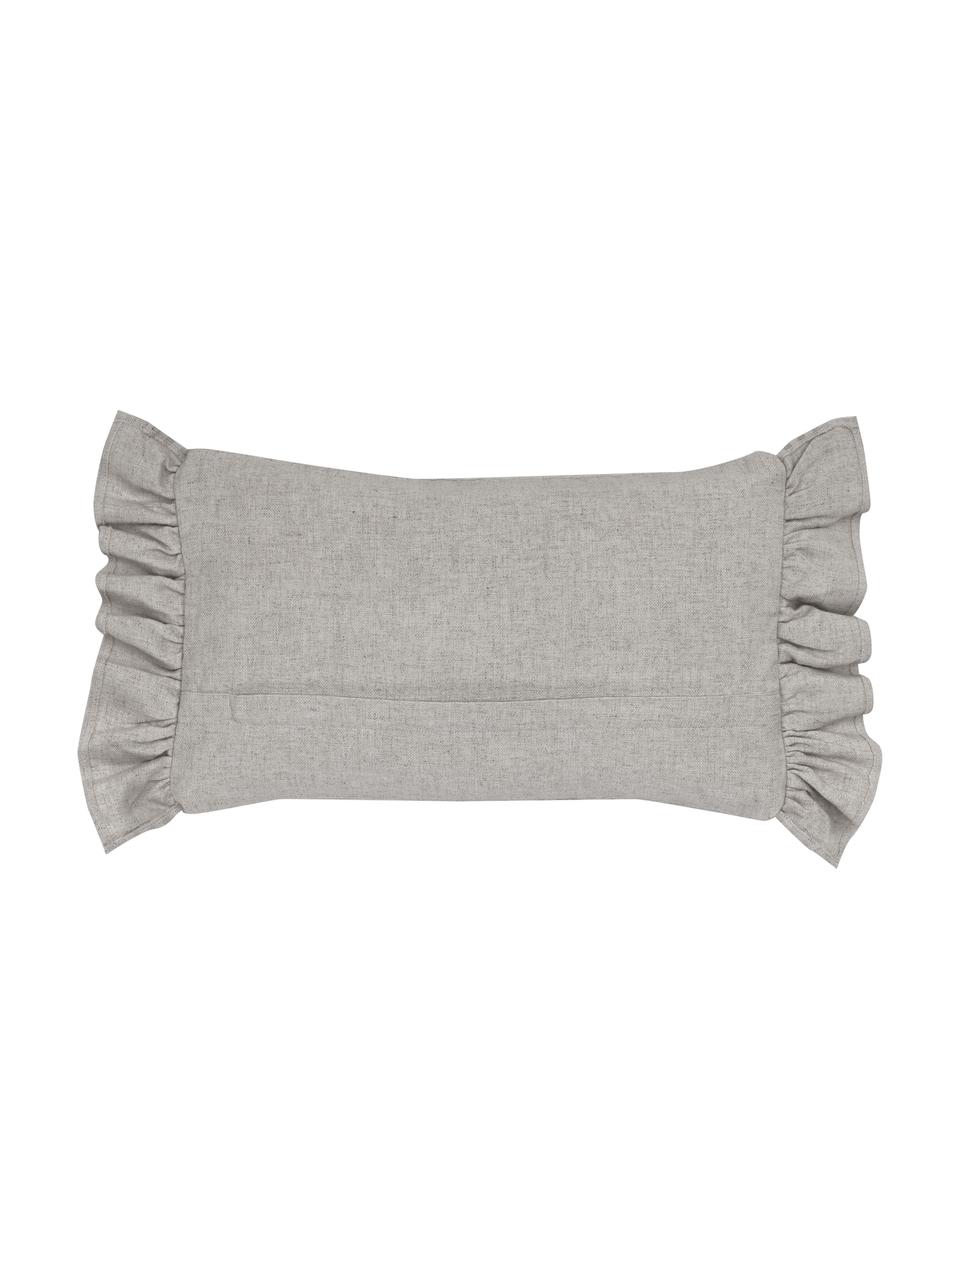 Kissenhülle Colette in Grau mit Rüschen, 60% Polyester, 25% Baumwolle, 15% Leinen, Grau, B 30 x L 50 cm